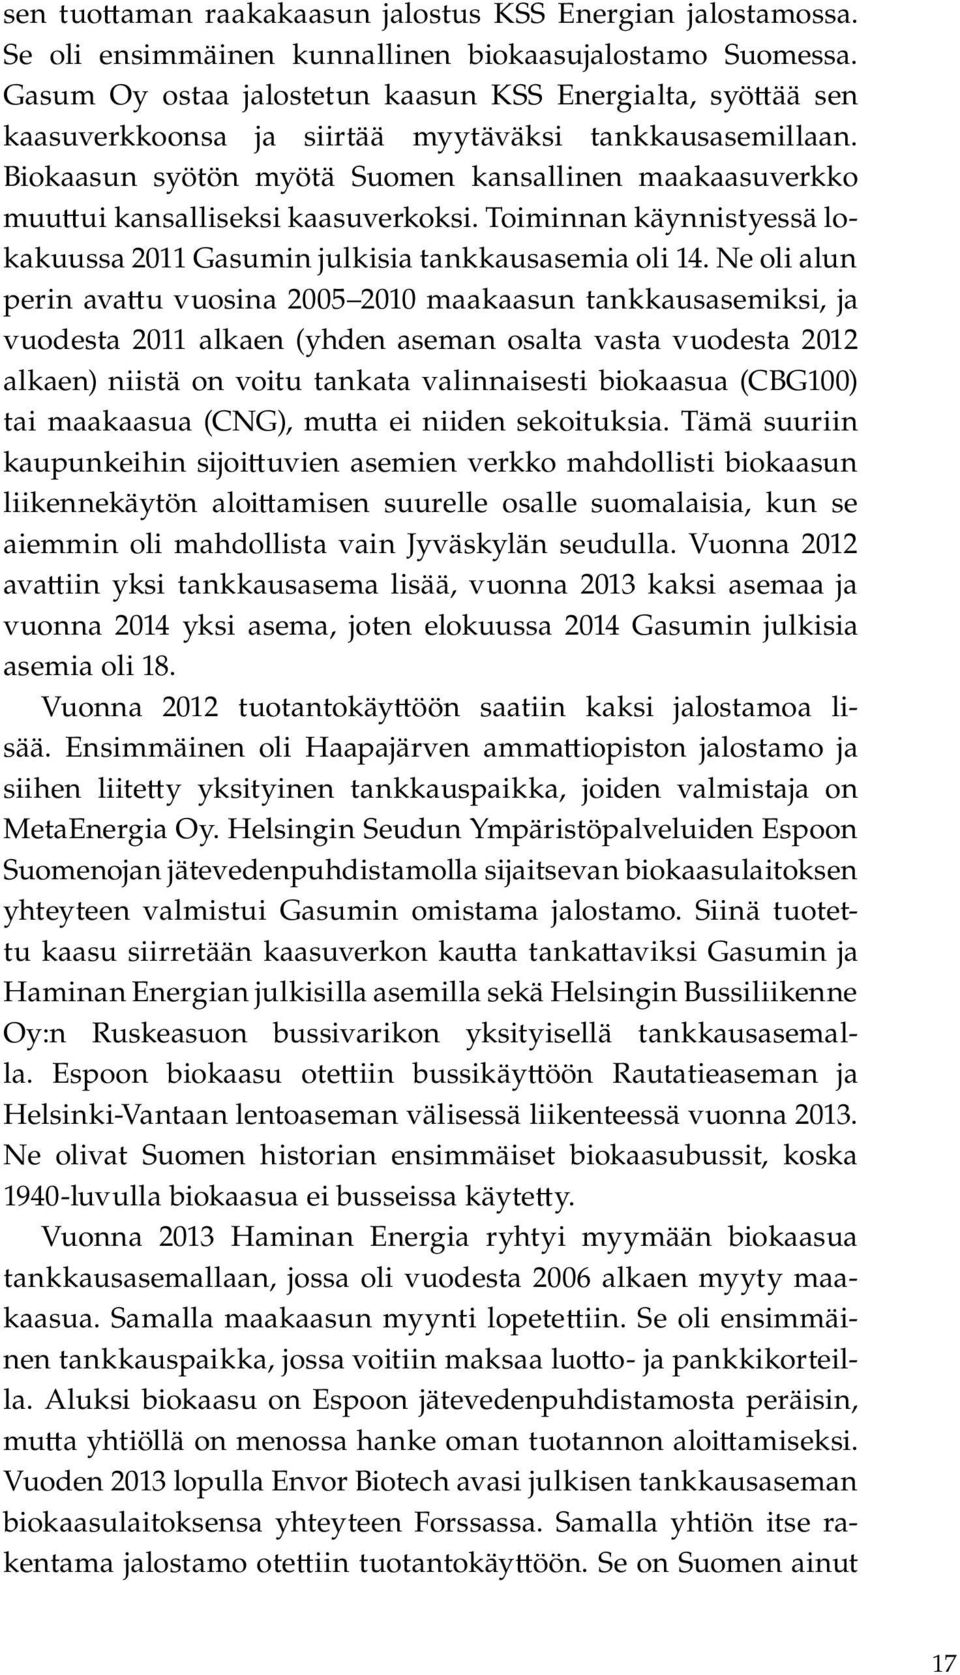 Biokaasun syötön myötä Suomen kansallinen maakaasuverkko muu ui kansalliseksi kaasuverkoksi. Toiminnan käynnistyessä lokakuussa 2011 Gasumin julkisia tankkausasemia oli 14.